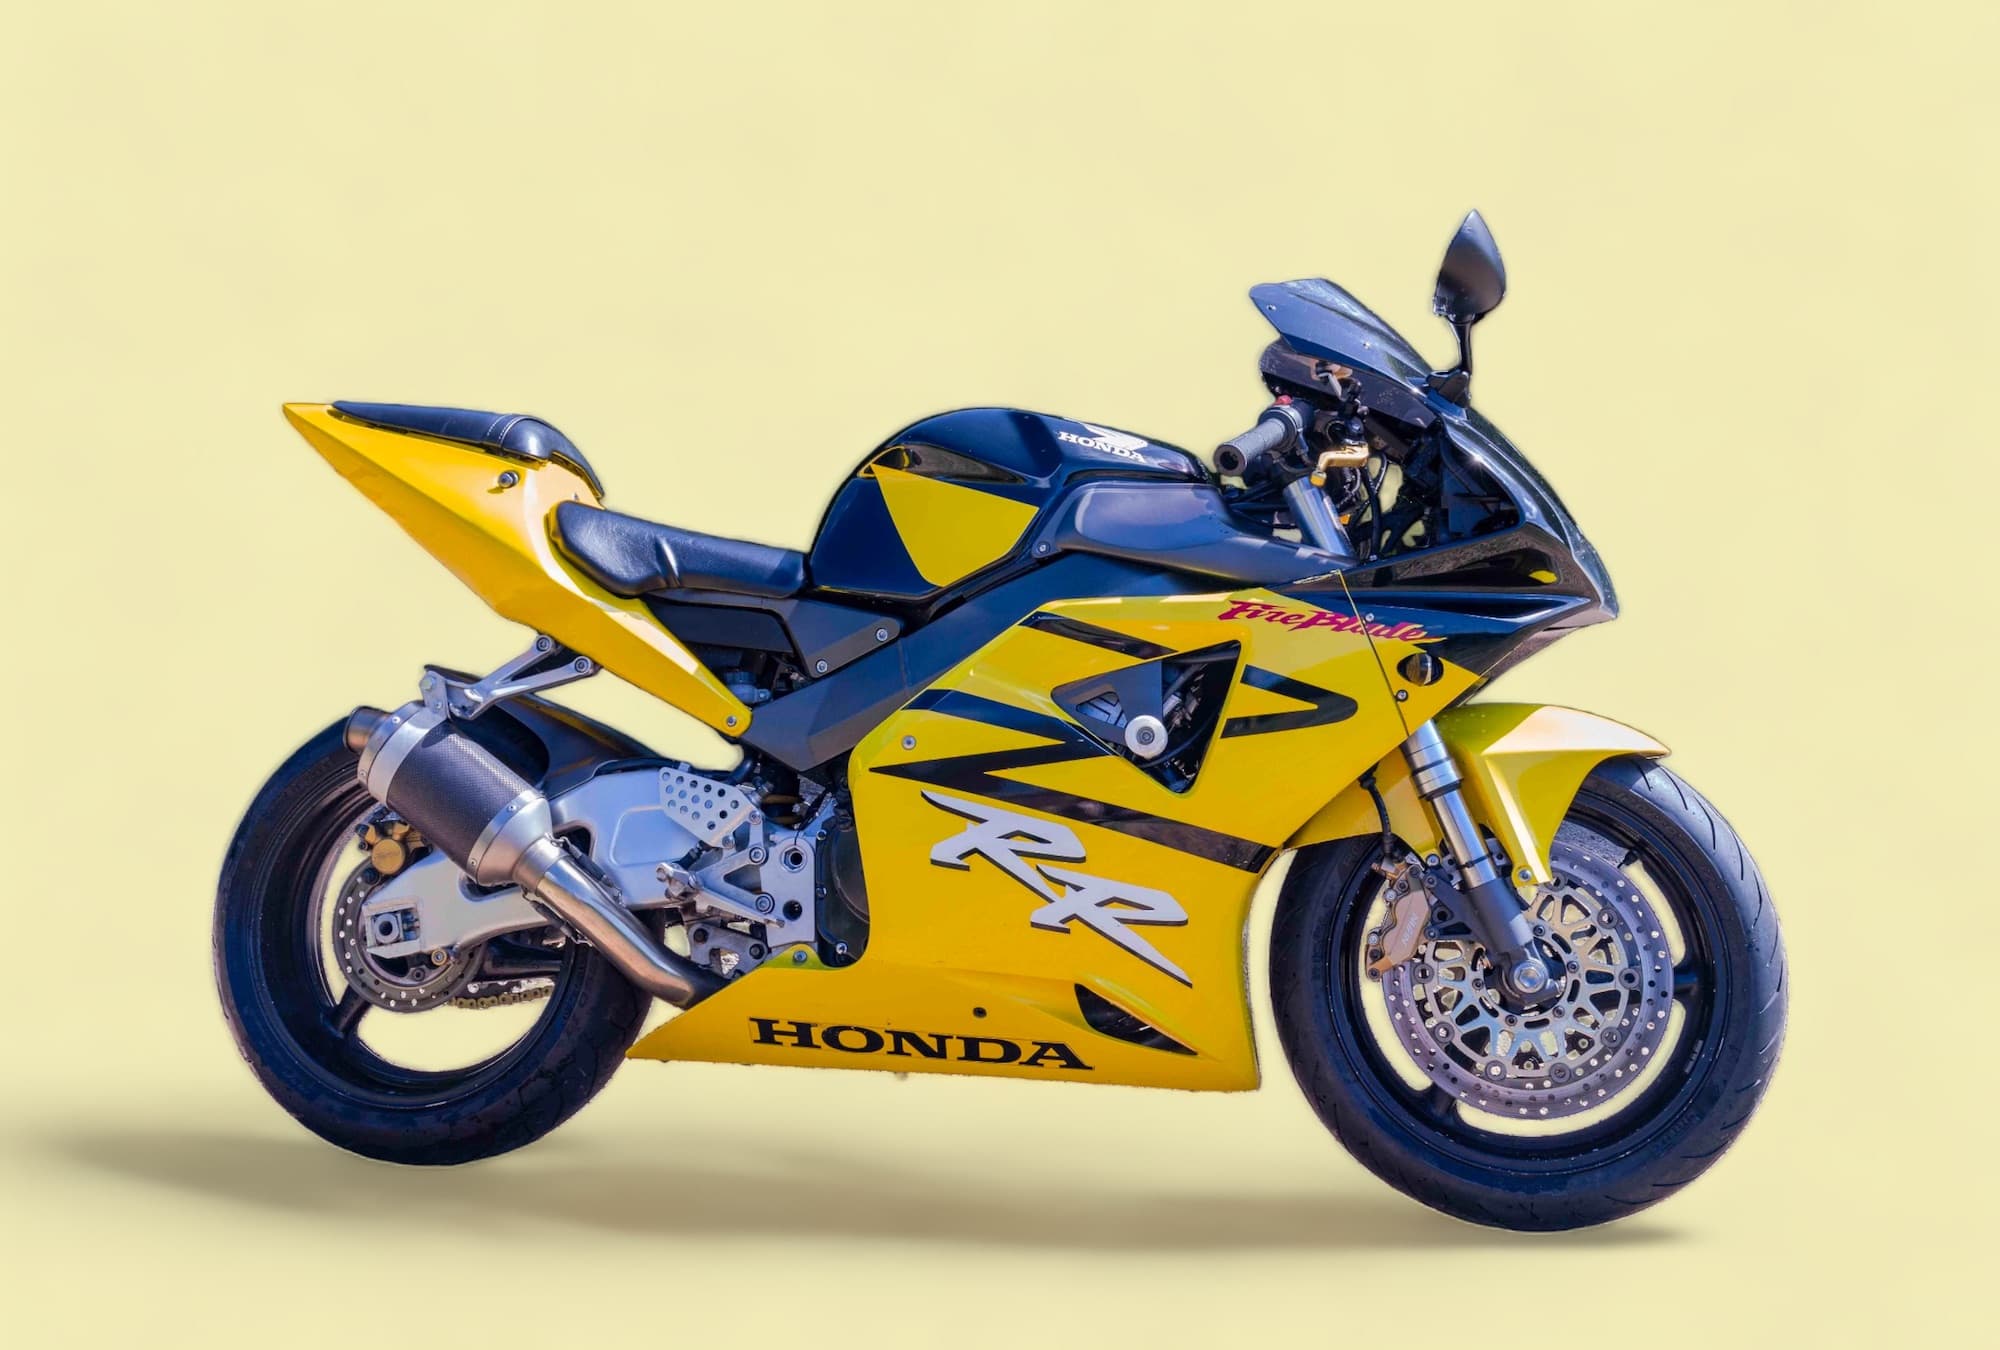 Honda CBR954RR FireBlade yellow motorcycles cover image